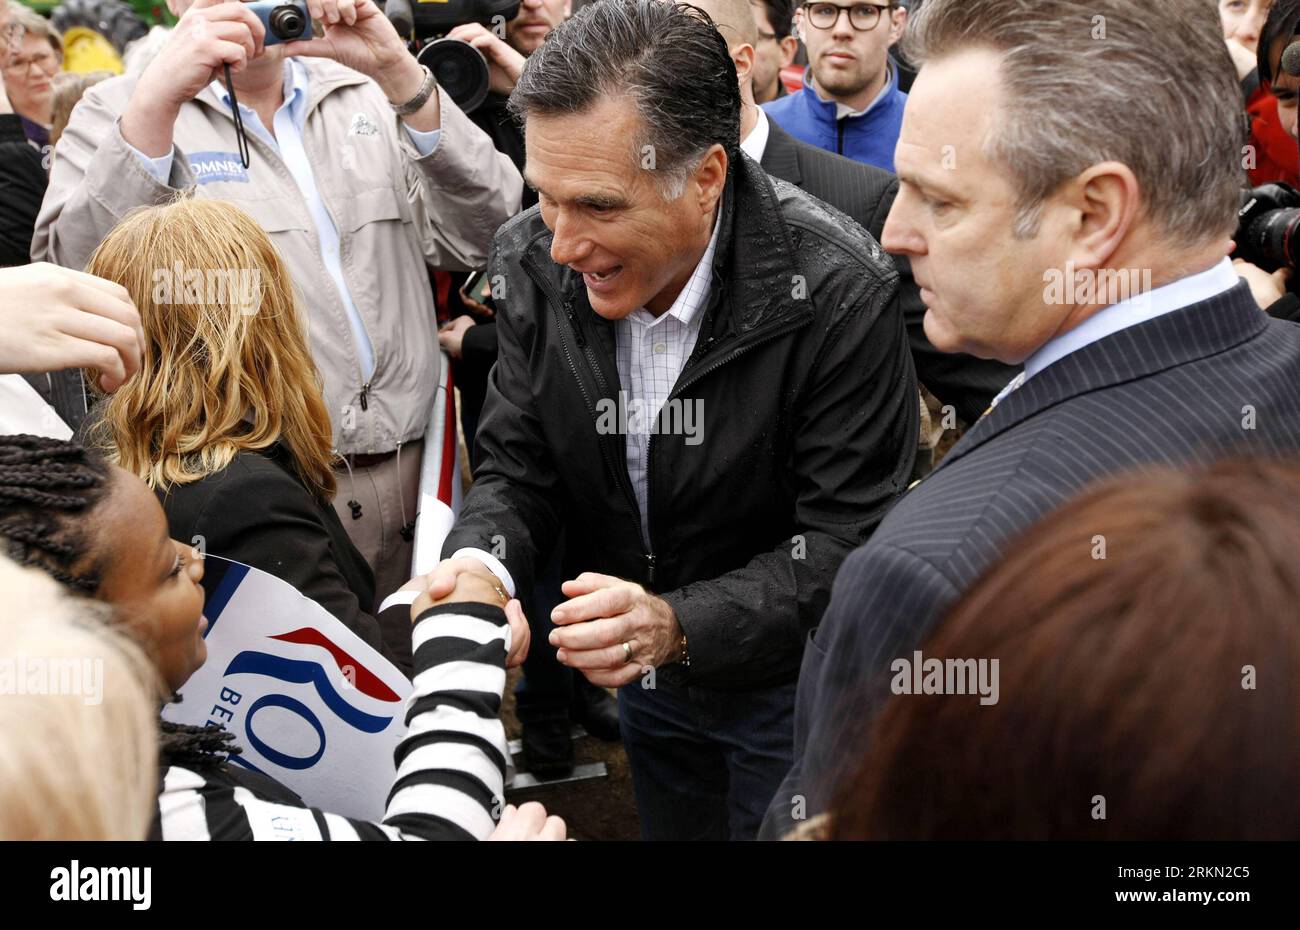 Bildnummer: 56935462 Datum: 20.01.2012 Copyright: imago/Xinhua (120121) -- SOUTH CAROLINA, 21. Januar 2012 (Xinhua) -- republikanischer Präsidentschaftskandidat, ehemaliger Gouverneur von Massachusetts, Romney schüttelt nach einem Wahlkampf in Gilbert, South Carolina, 20. Januar 2012 die Hände mit einem kleinen Mädchen. Nur wenige Stunden von einer entscheidenden republikanischen Vorwahl in South Carolina entfernt, glauben viele Experten, dass das enge Rennen zwischen Mitt Romney und NewtGingrich viel mehr Auswirkungen haben könnte als die Vorwahl selbst. (Xinhua/Fang Zhe)(ctt) US-SOUTH CAROLINA-KAMPAGNE-PRIMARY PUBLICATIONxNOTxINxCHN People Politik Stockfoto